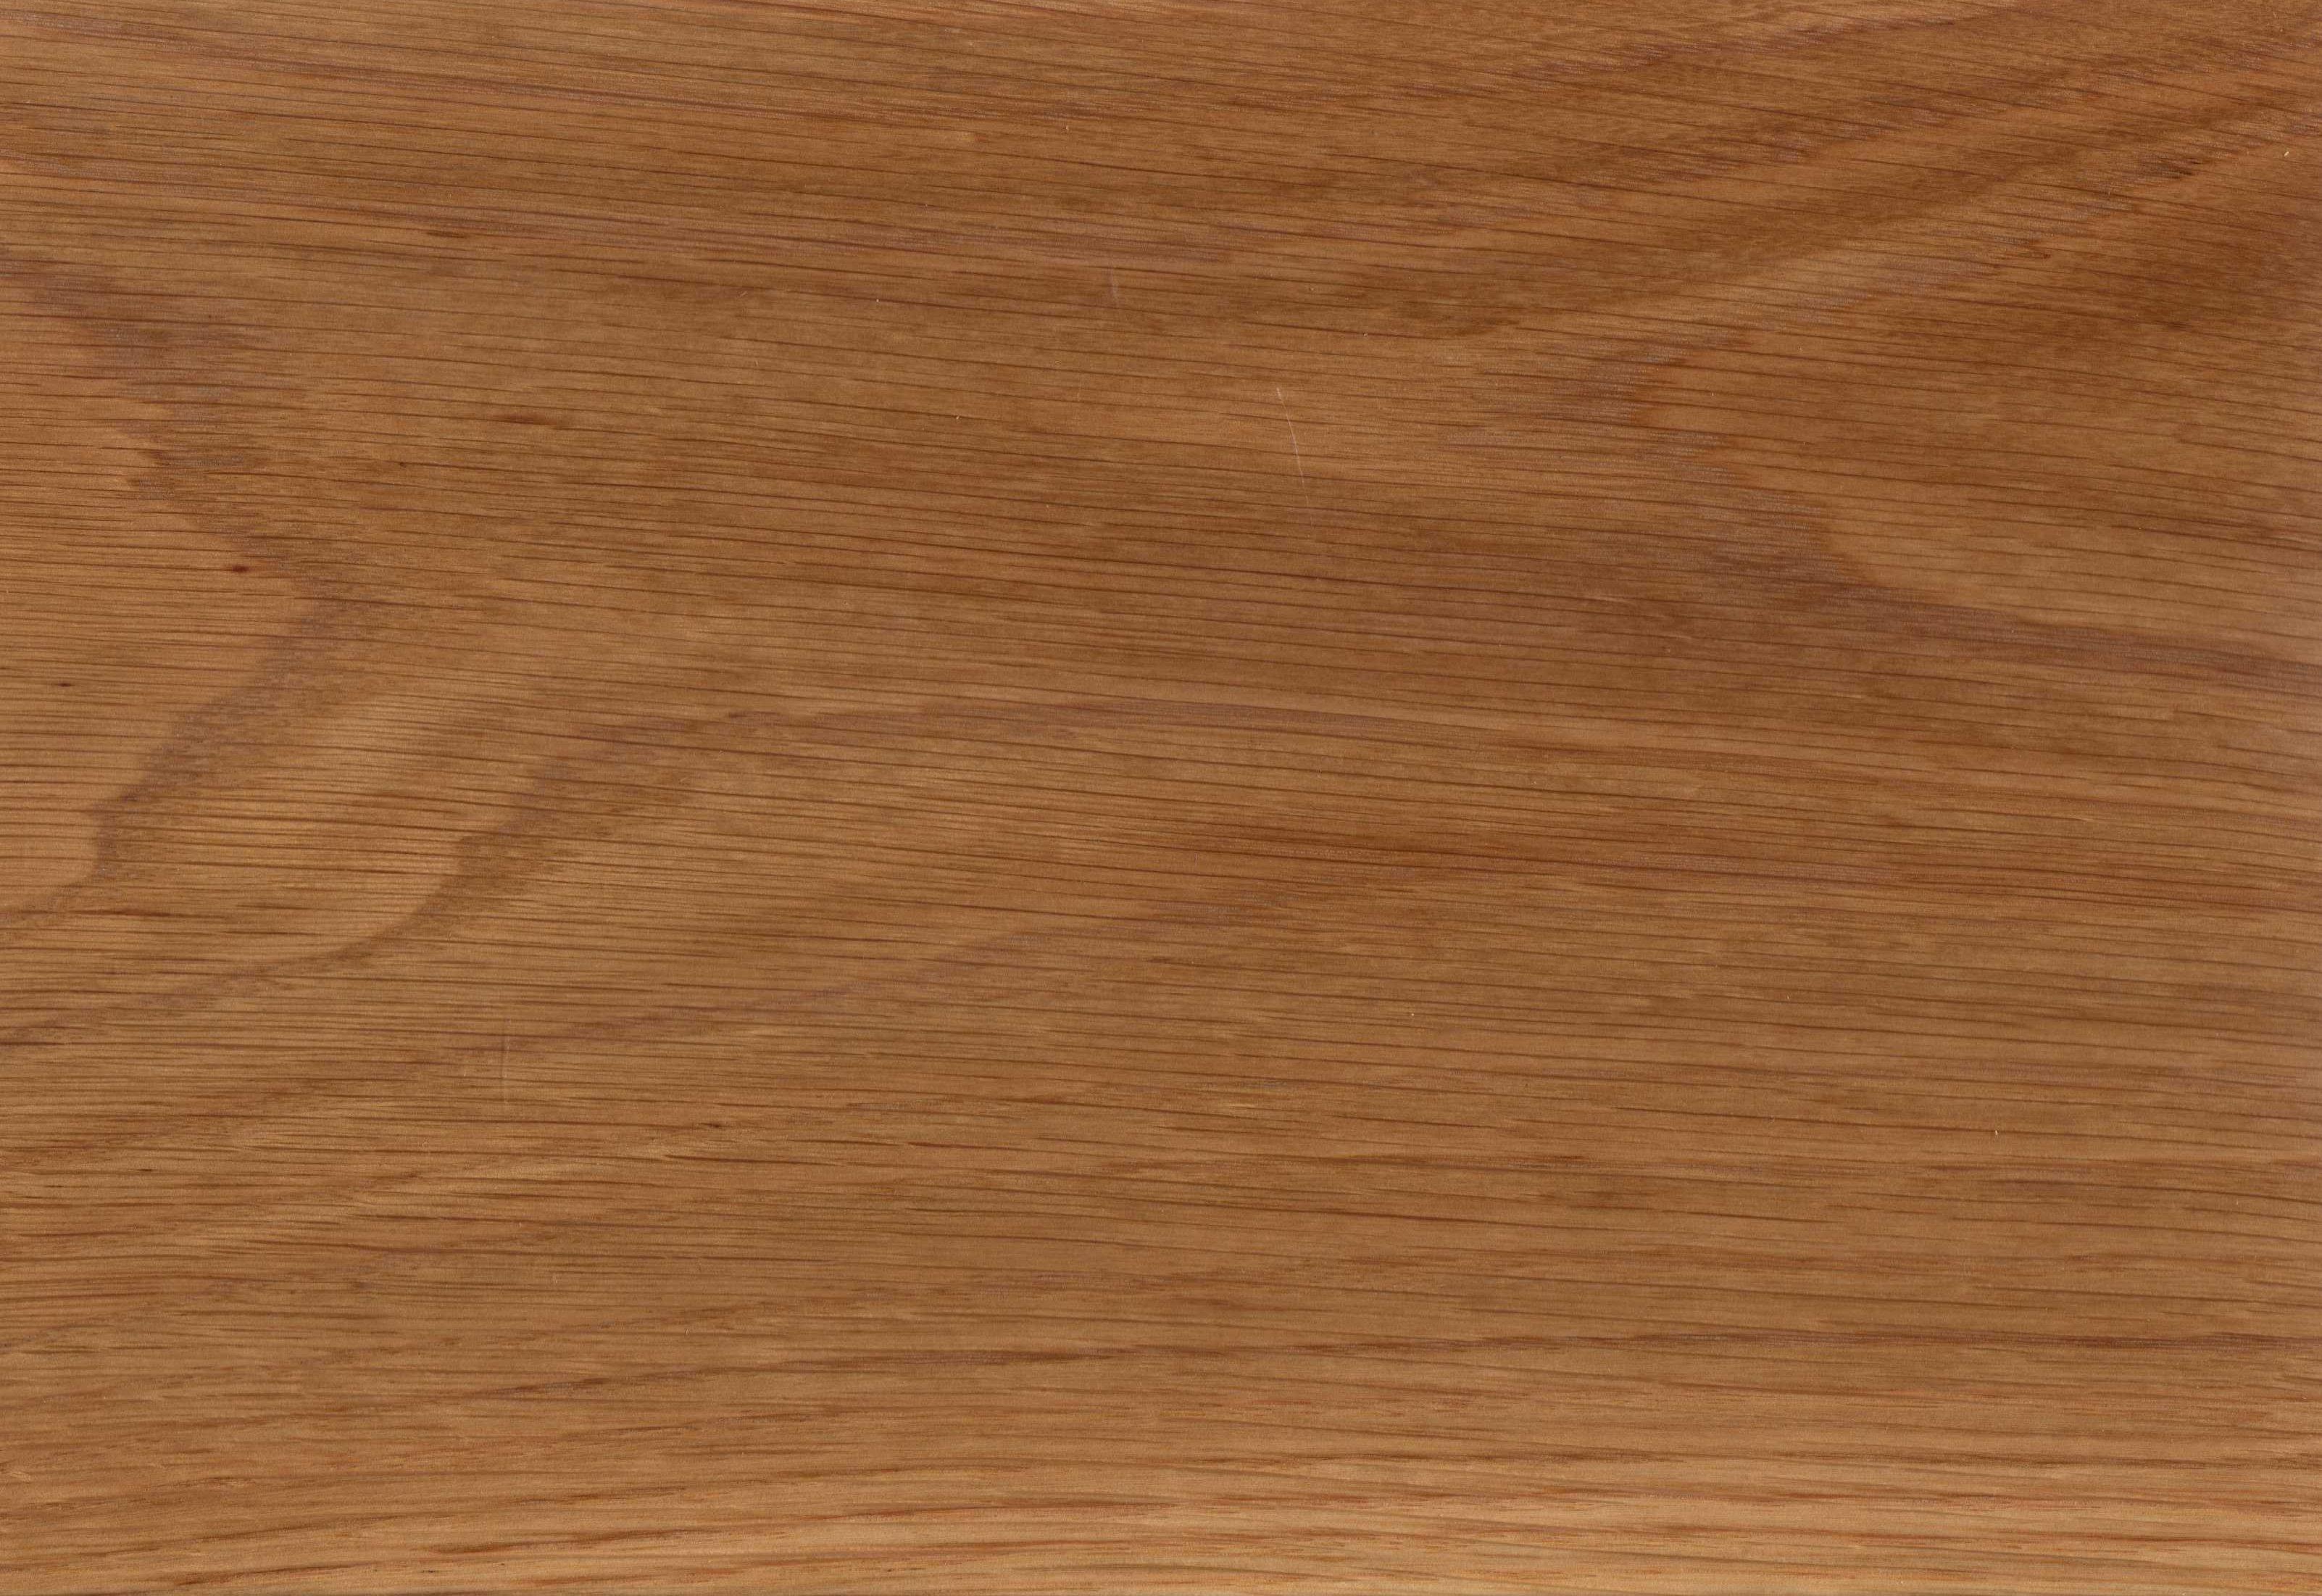 Oak Wood Pattern # 3204x2202. All For Desktop